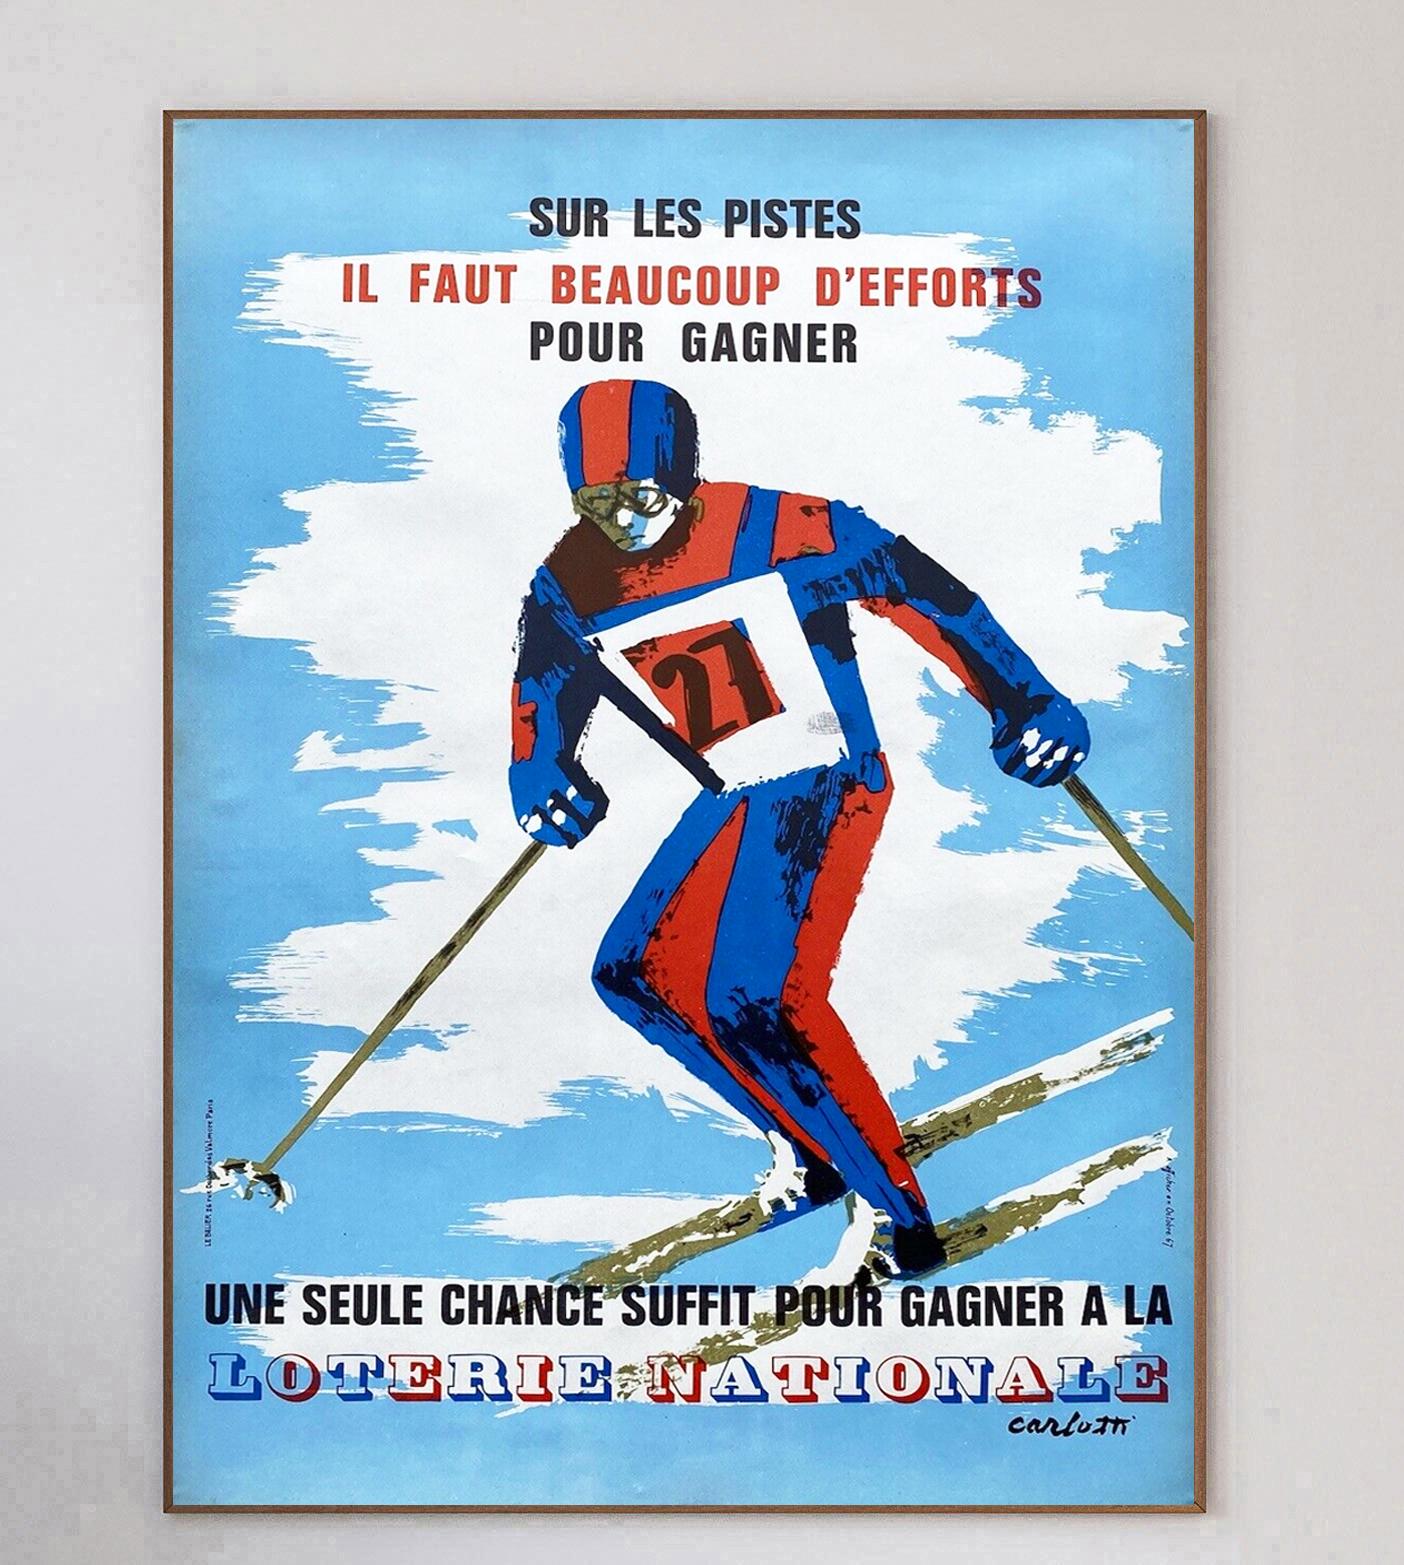 Cette belle affiche colorée date de 1967 et fait la promotion de la Loterie Nationale. Intitulée 